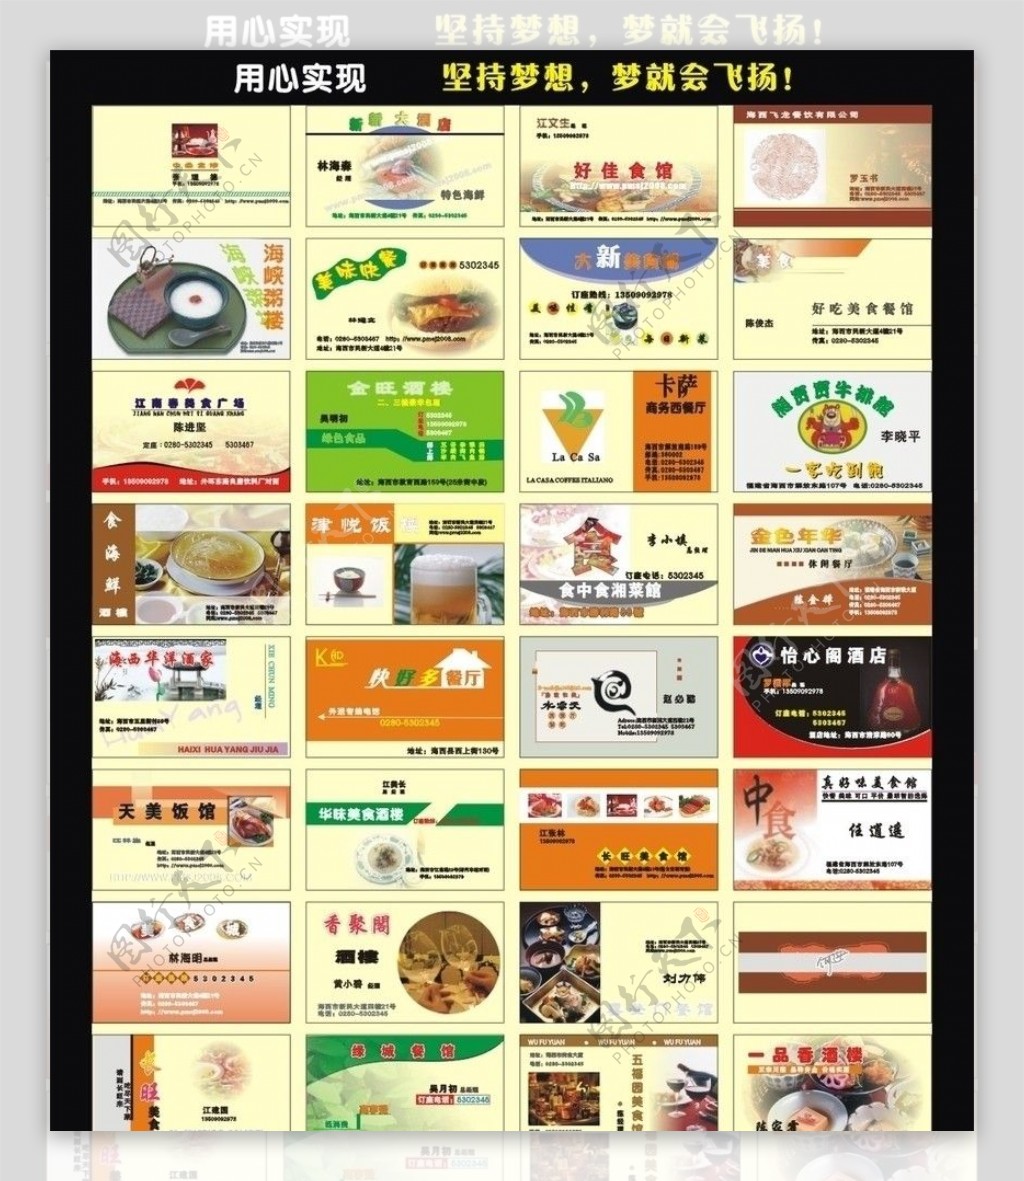 名片模板各种餐饮名片模板图片